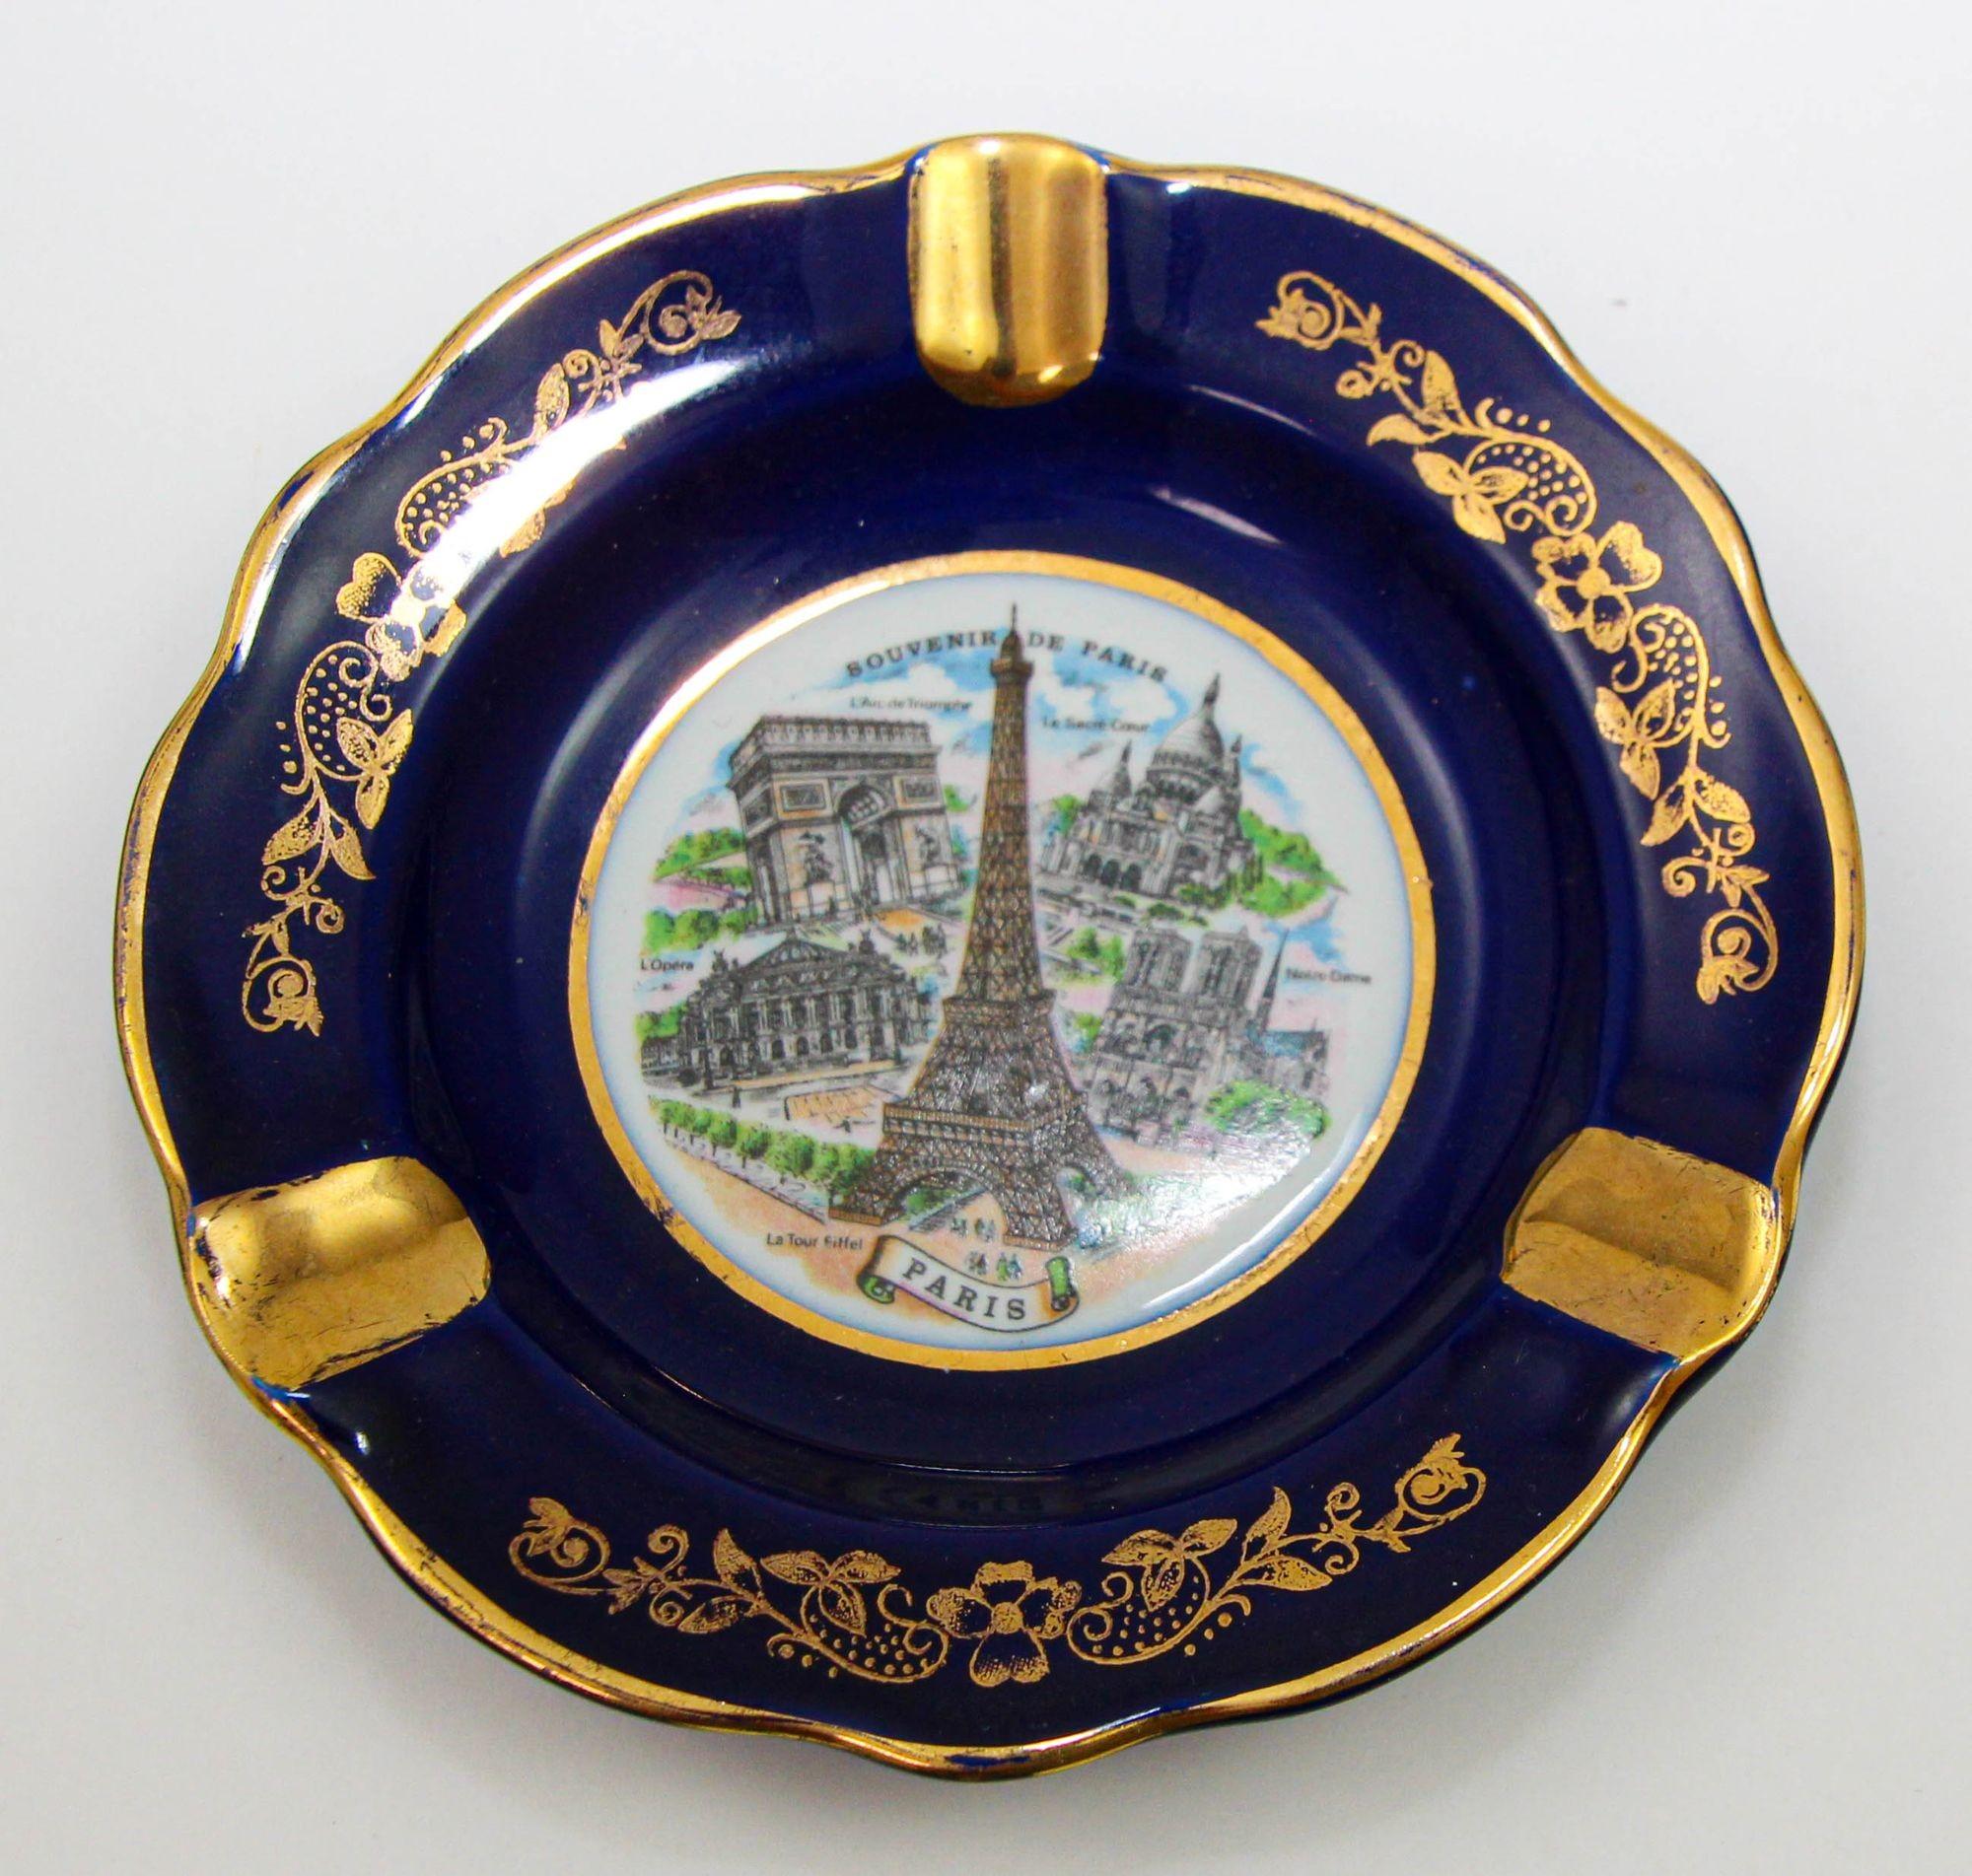 Louis XIV Limoges France Porcelain Dish Ashtray Souvenir of Paris Cobalt Blue and 24K Gold For Sale